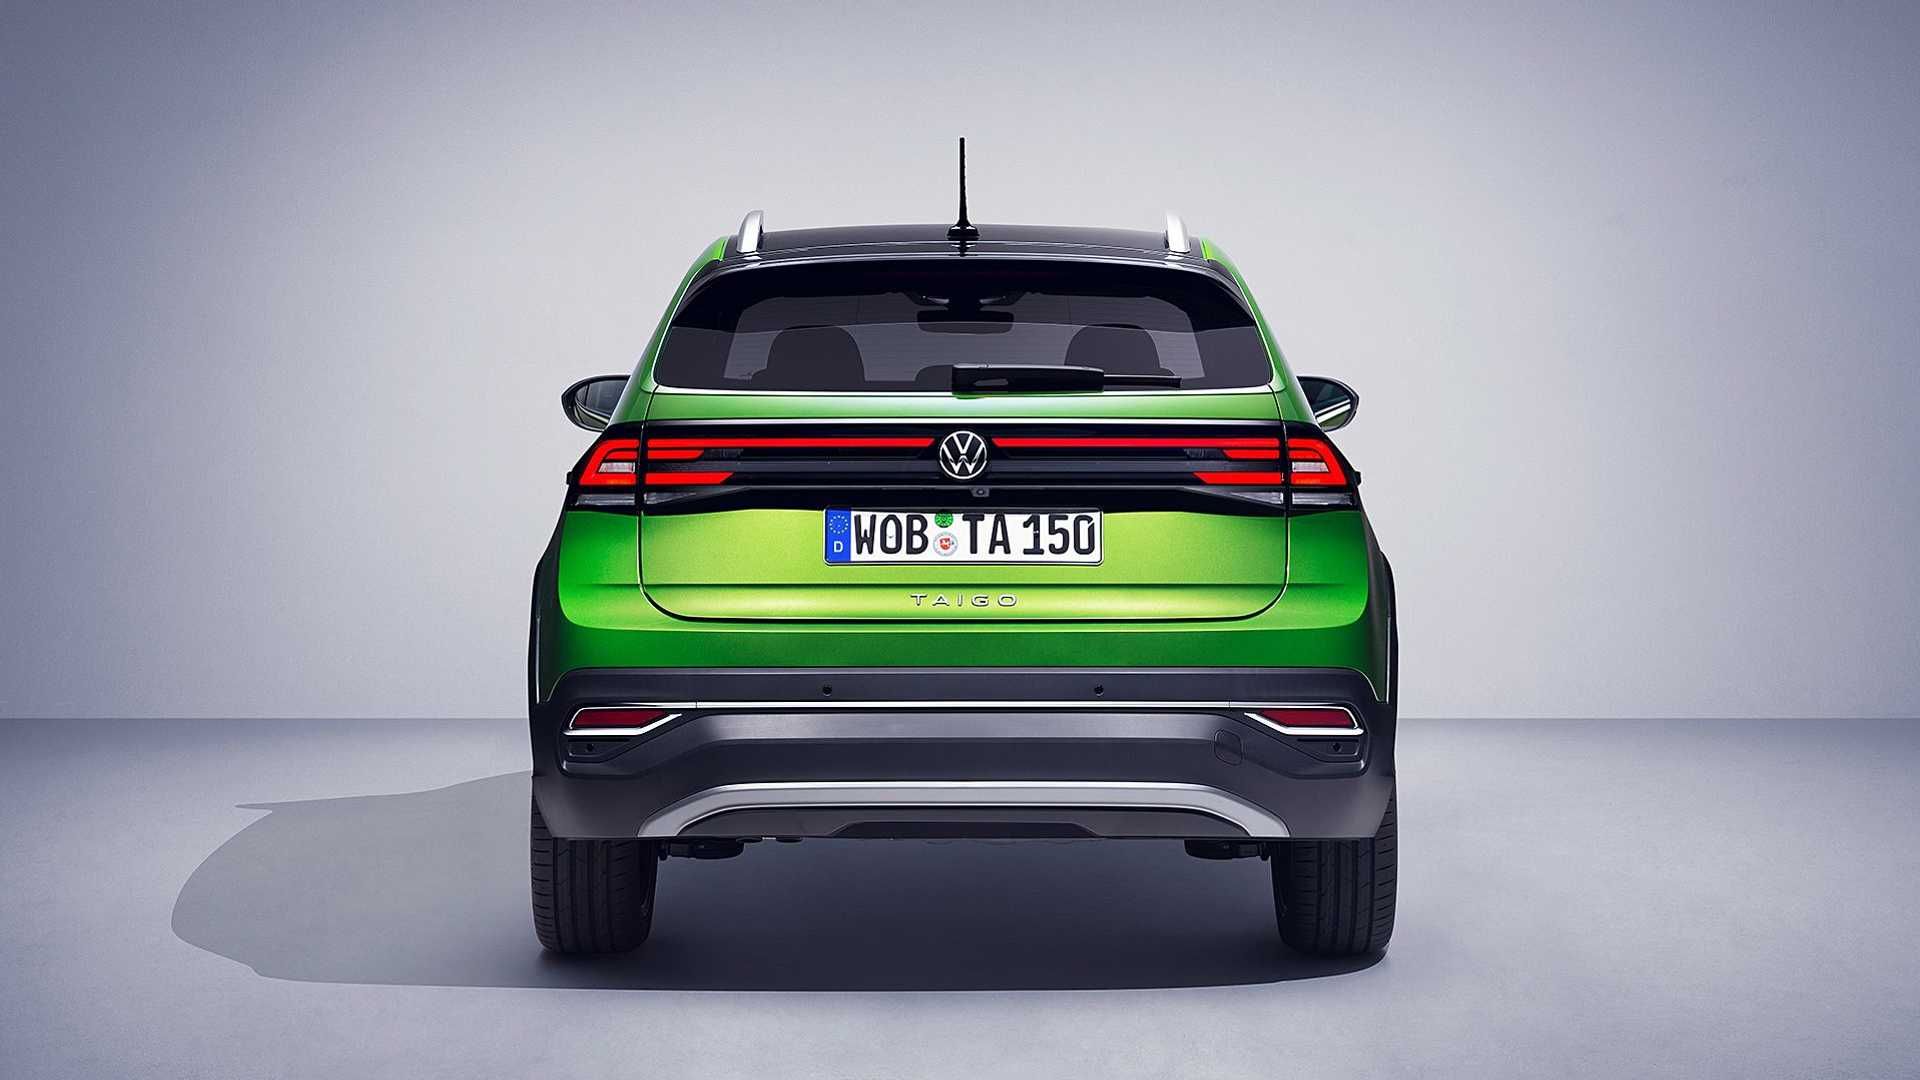 نمای عقب 2022 Volkswagen Taigo Crossover / کراس اور فولکس واگن تایگو سبز رنگ